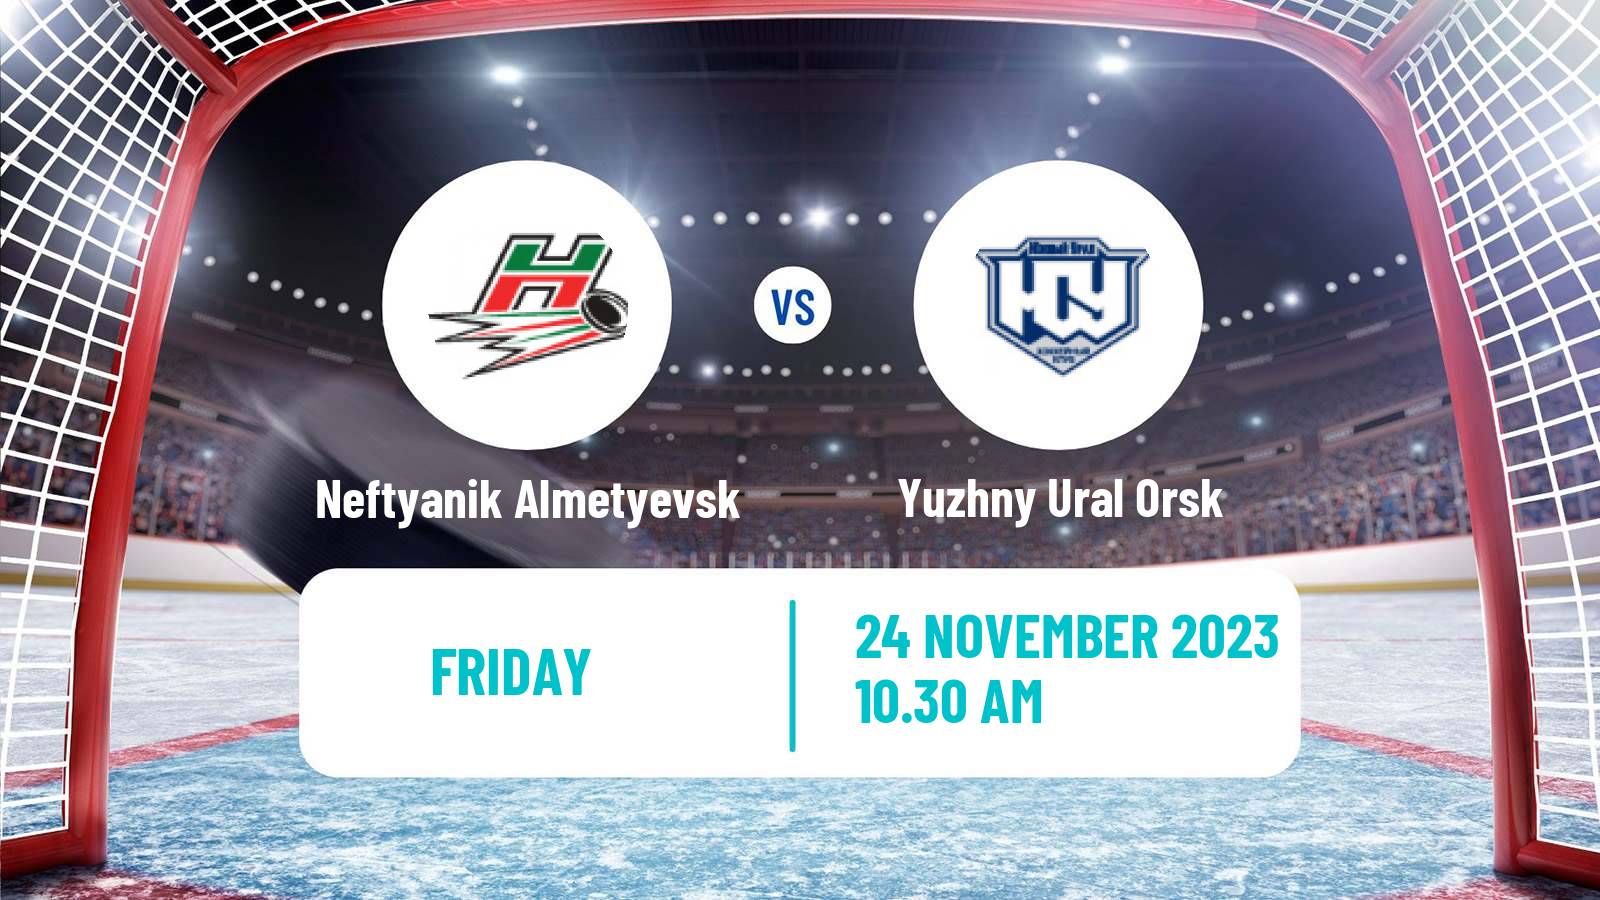 Hockey VHL Neftyanik Almetyevsk - Yuzhny Ural Orsk